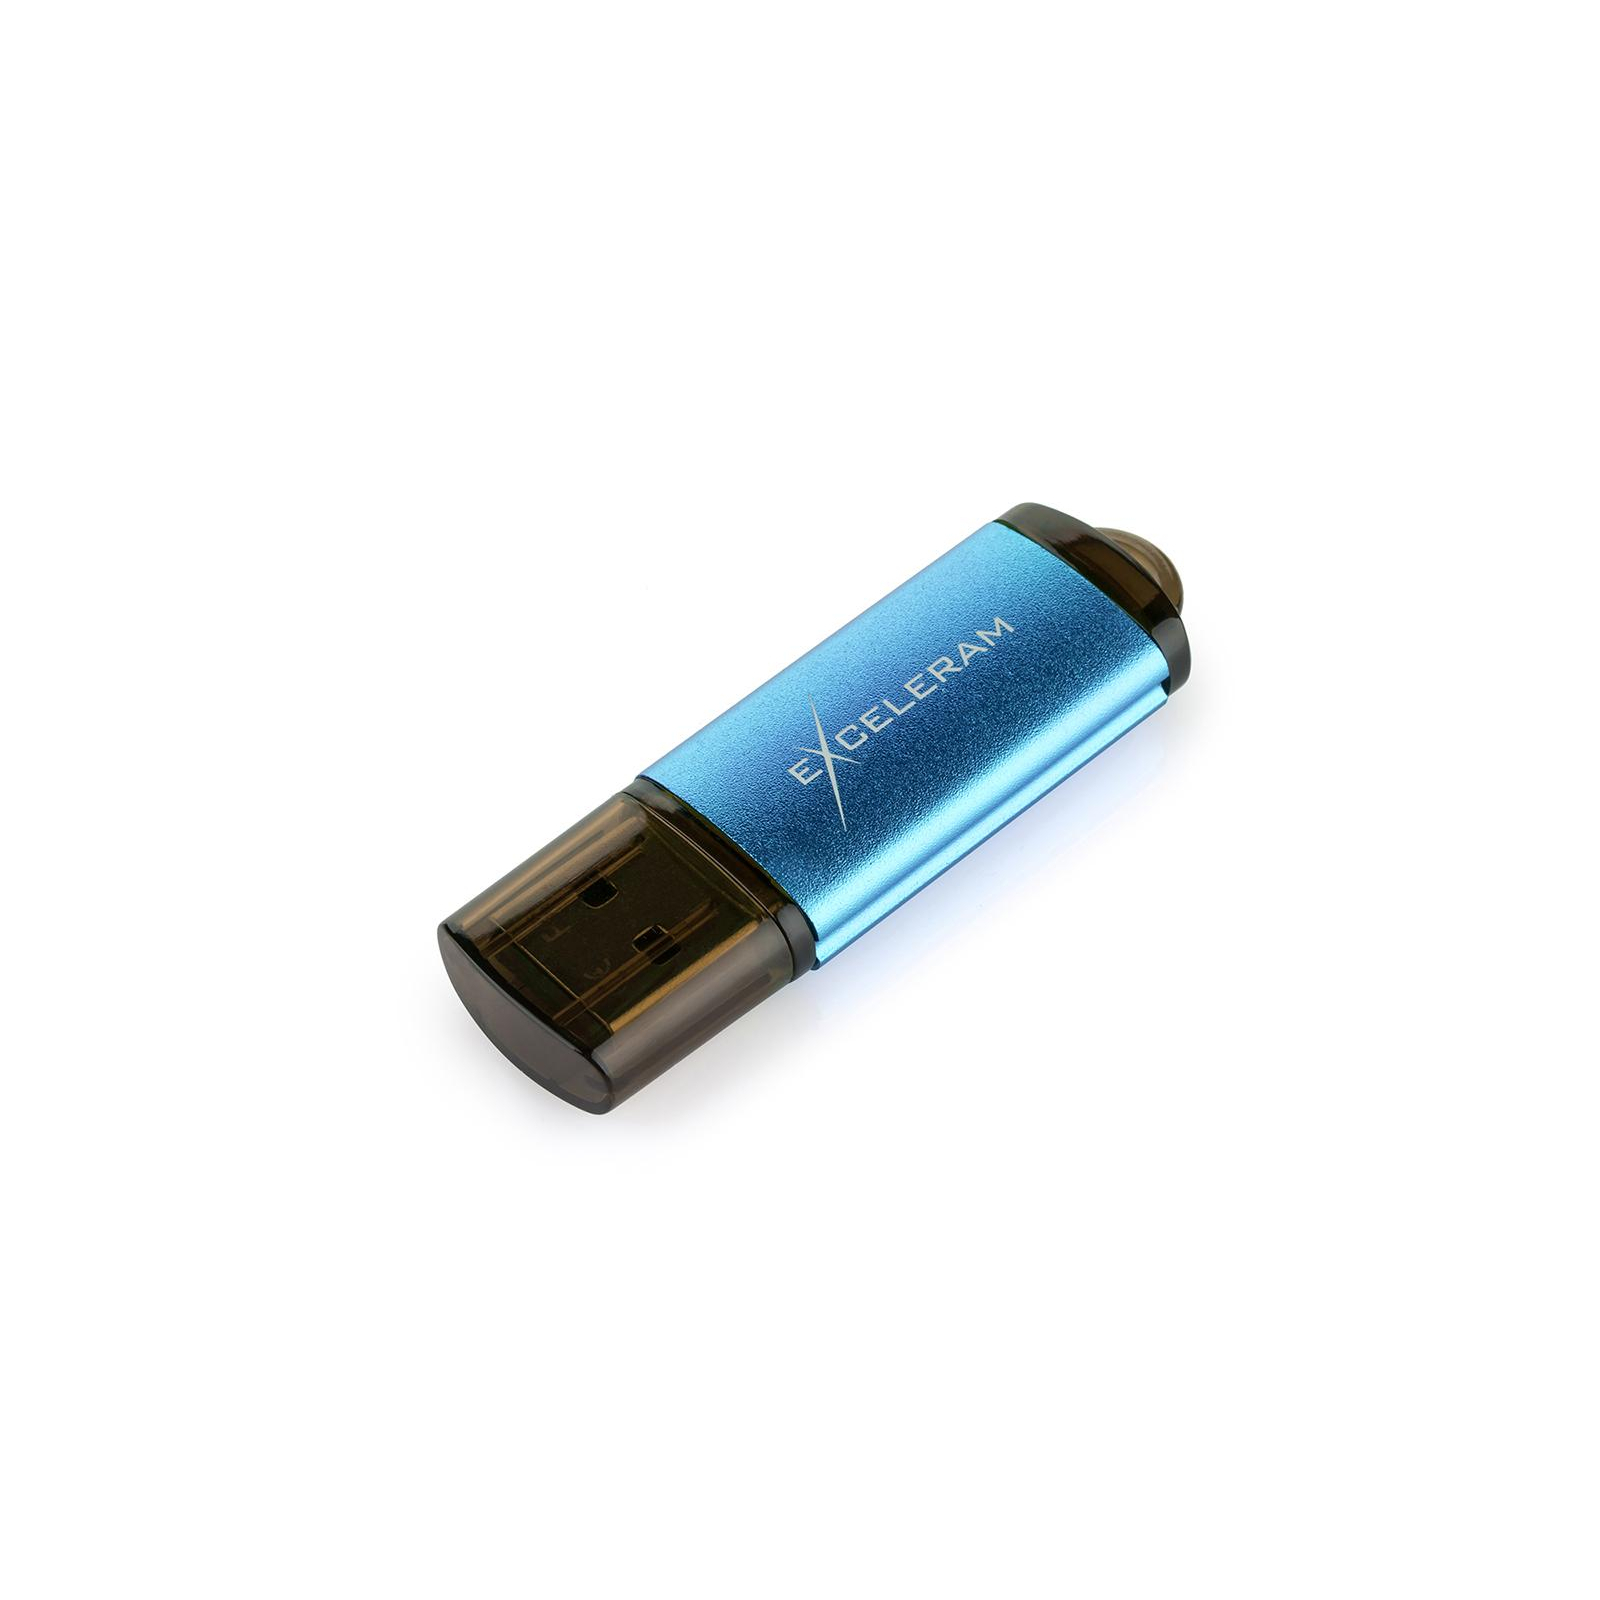 USB флеш накопитель eXceleram 128GB A3 Series Green USB 3.1 Gen 1 (EXA3U3GR128) изображение 3